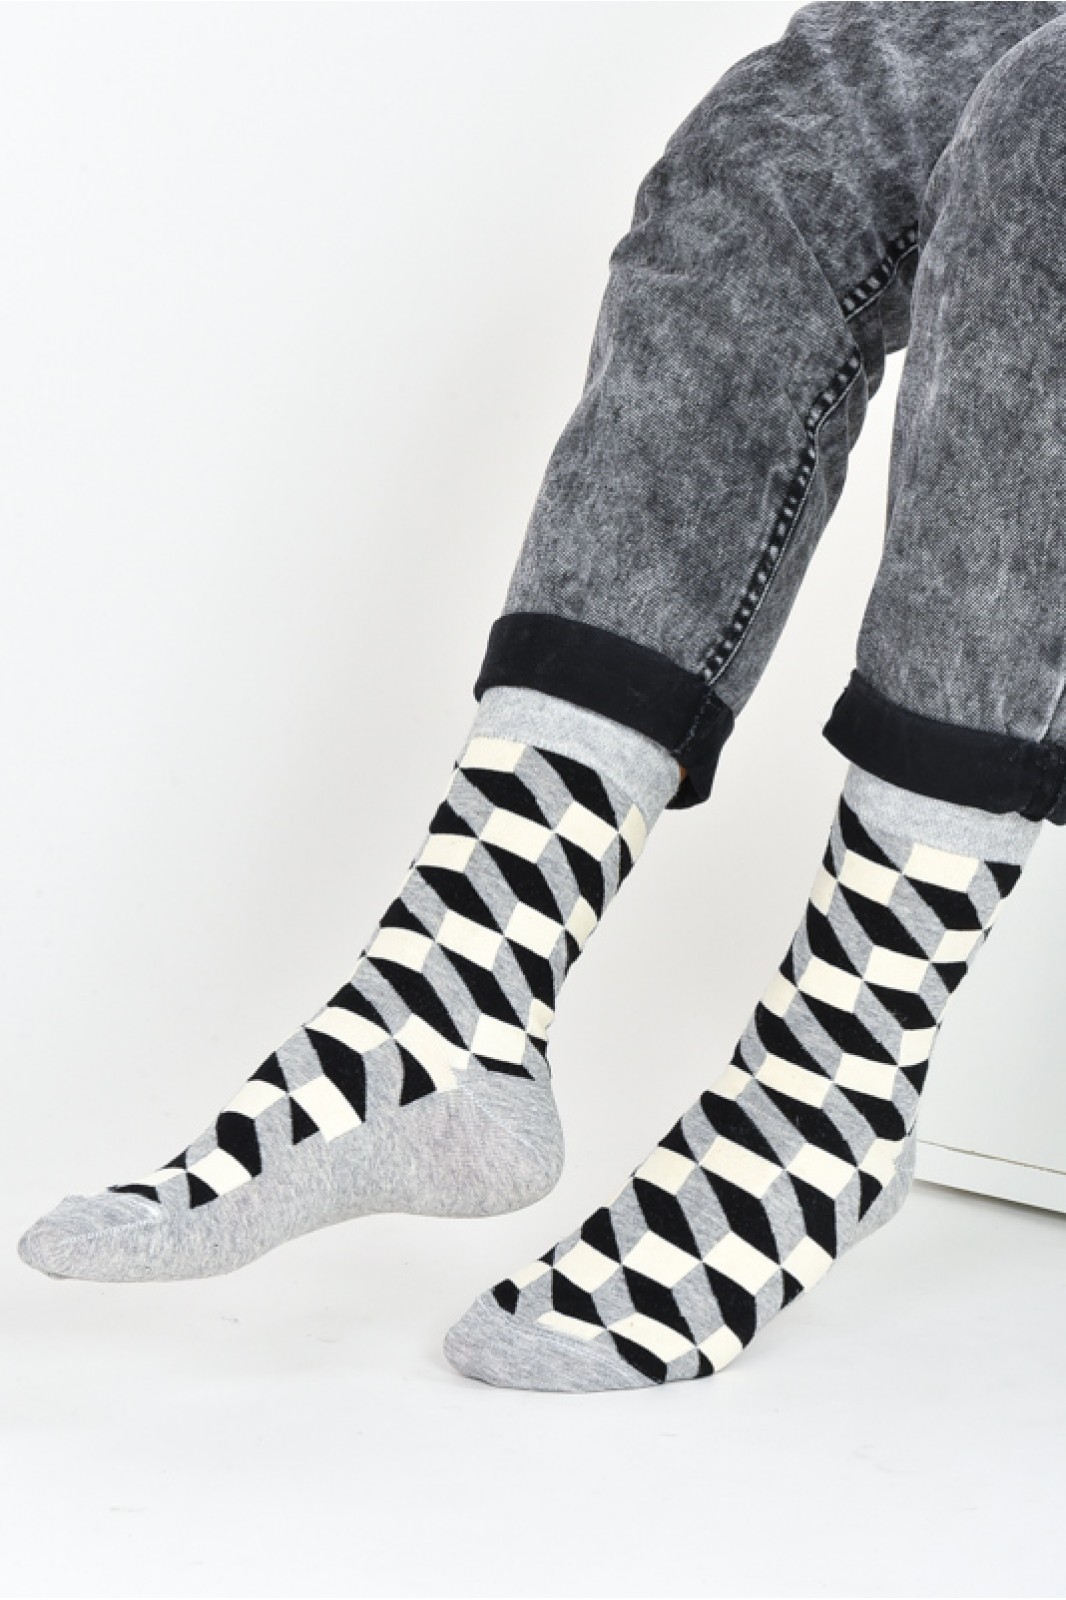 DOUROS Socks 3D - UNISEX Cotton